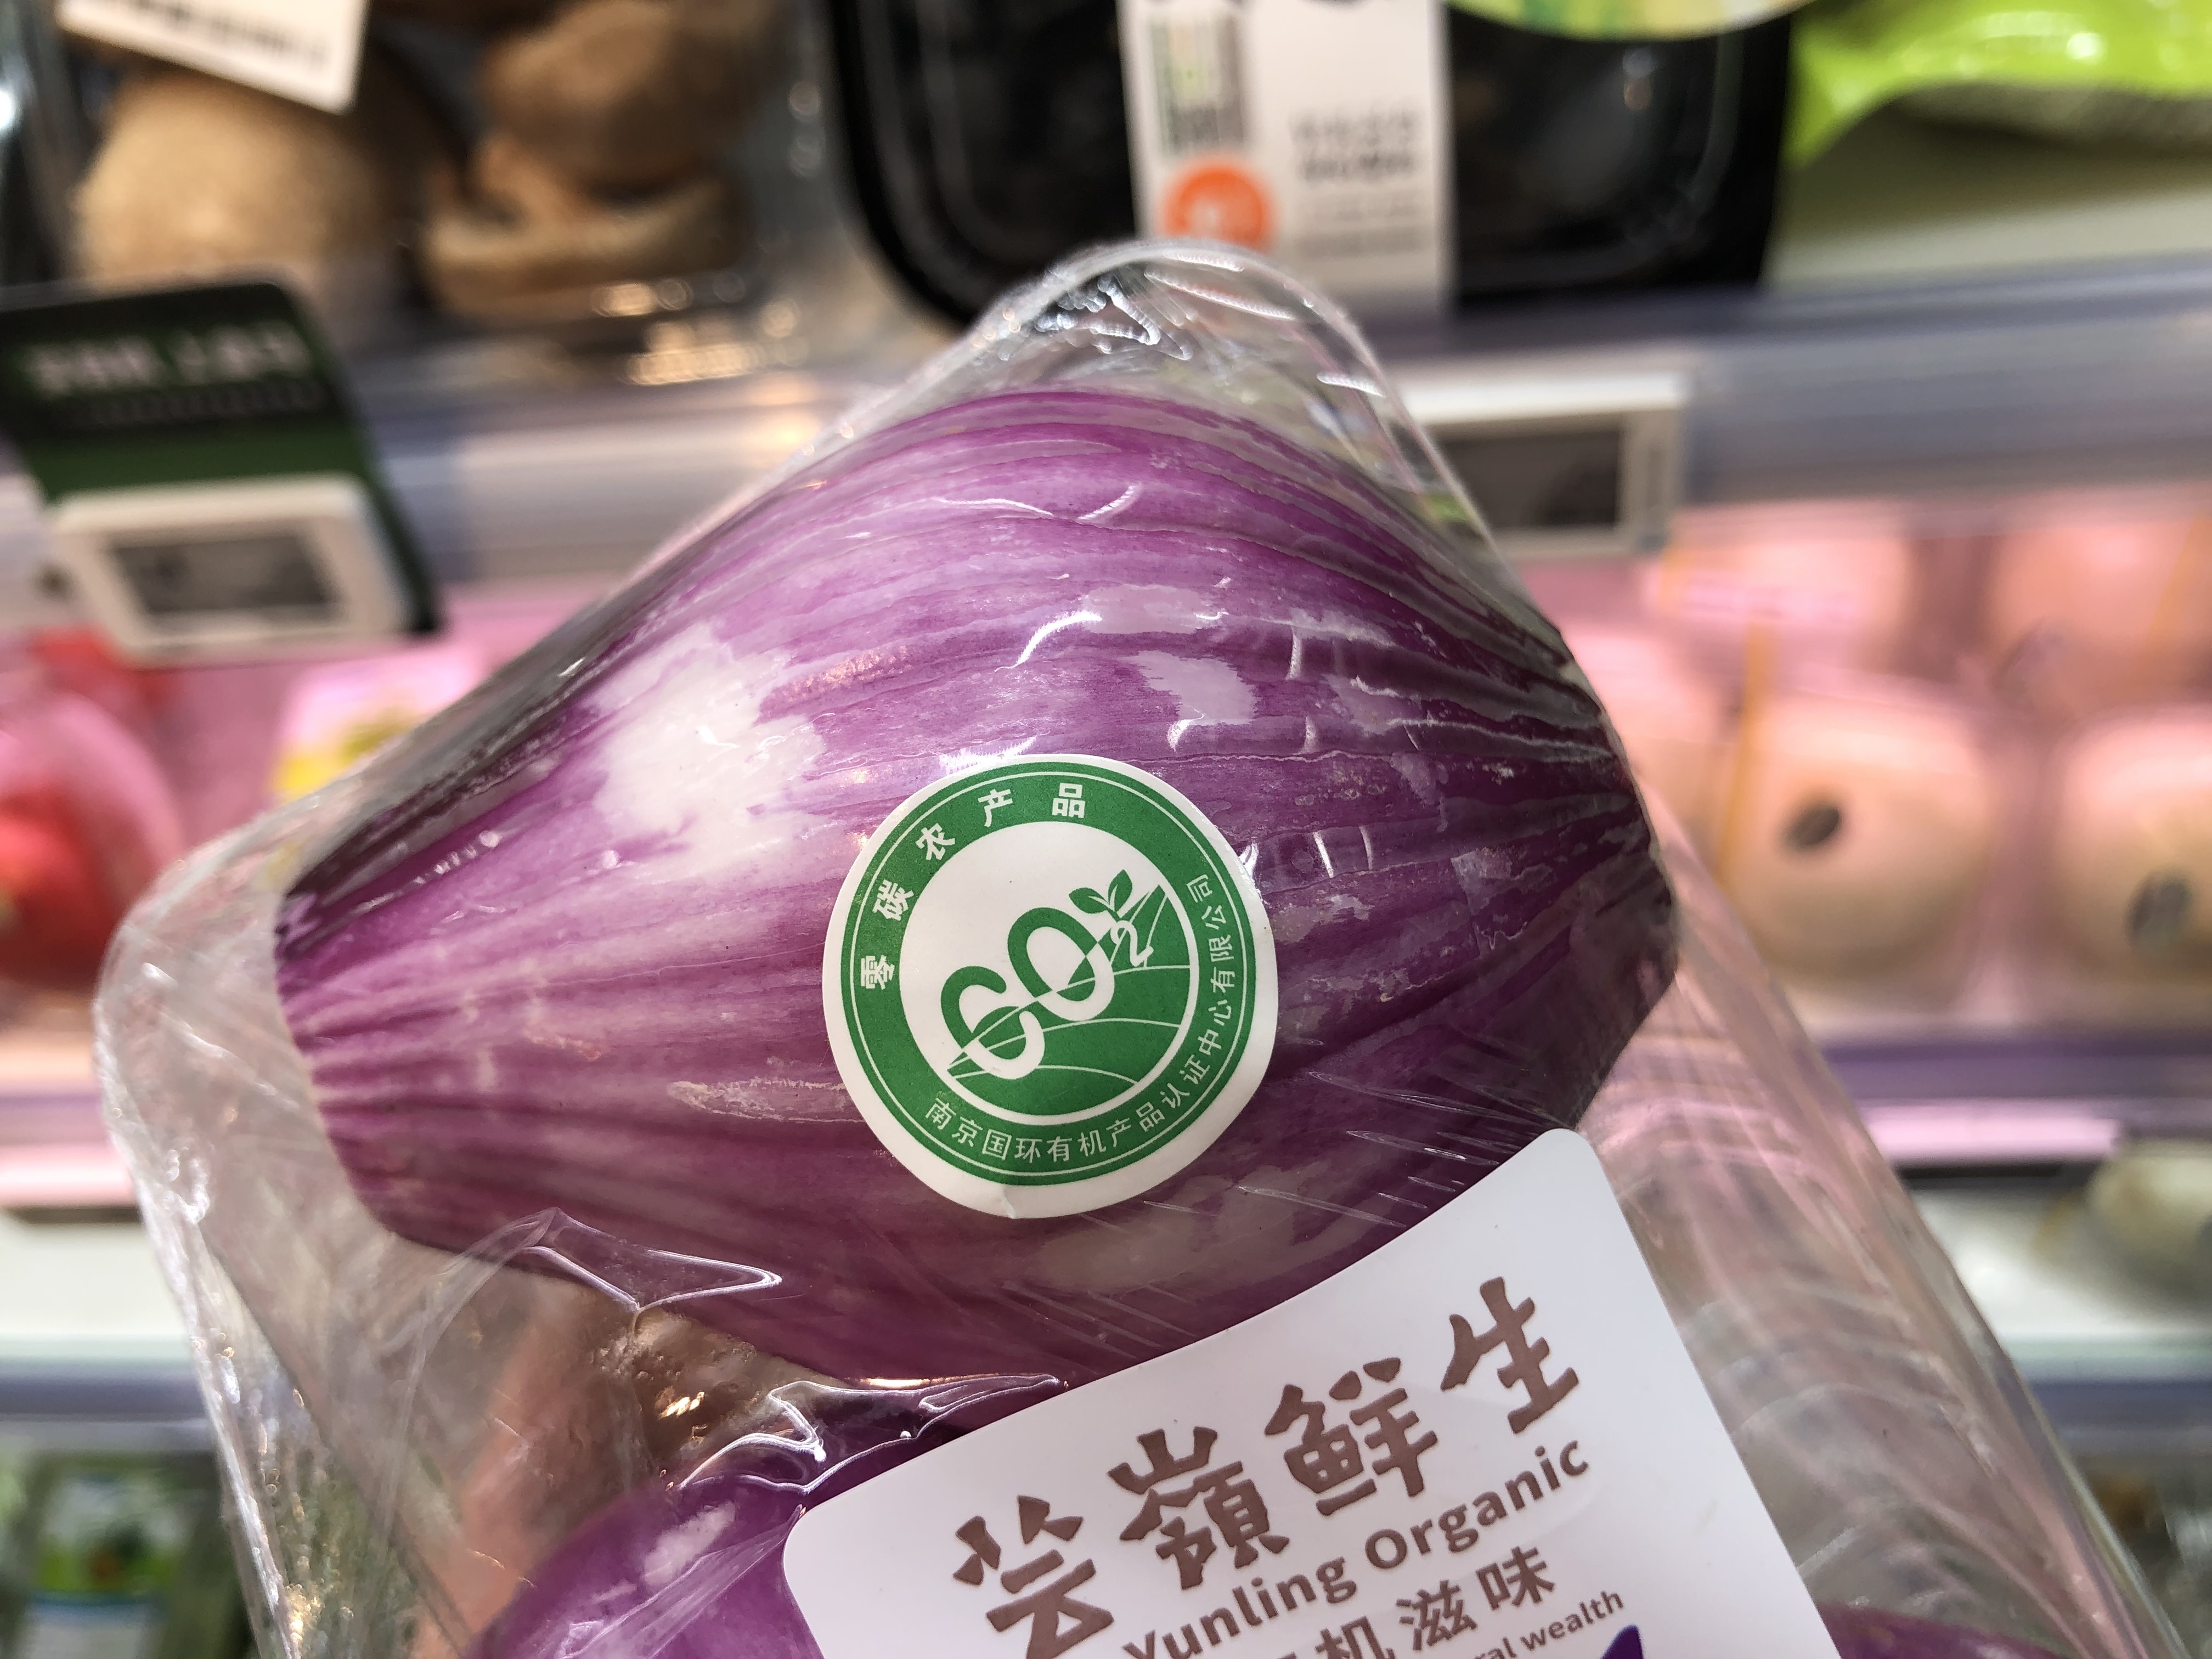 盒马零碳有机蔬菜包装上贴有第三方认证机构的认证标签。 新京报记者 王子扬 摄